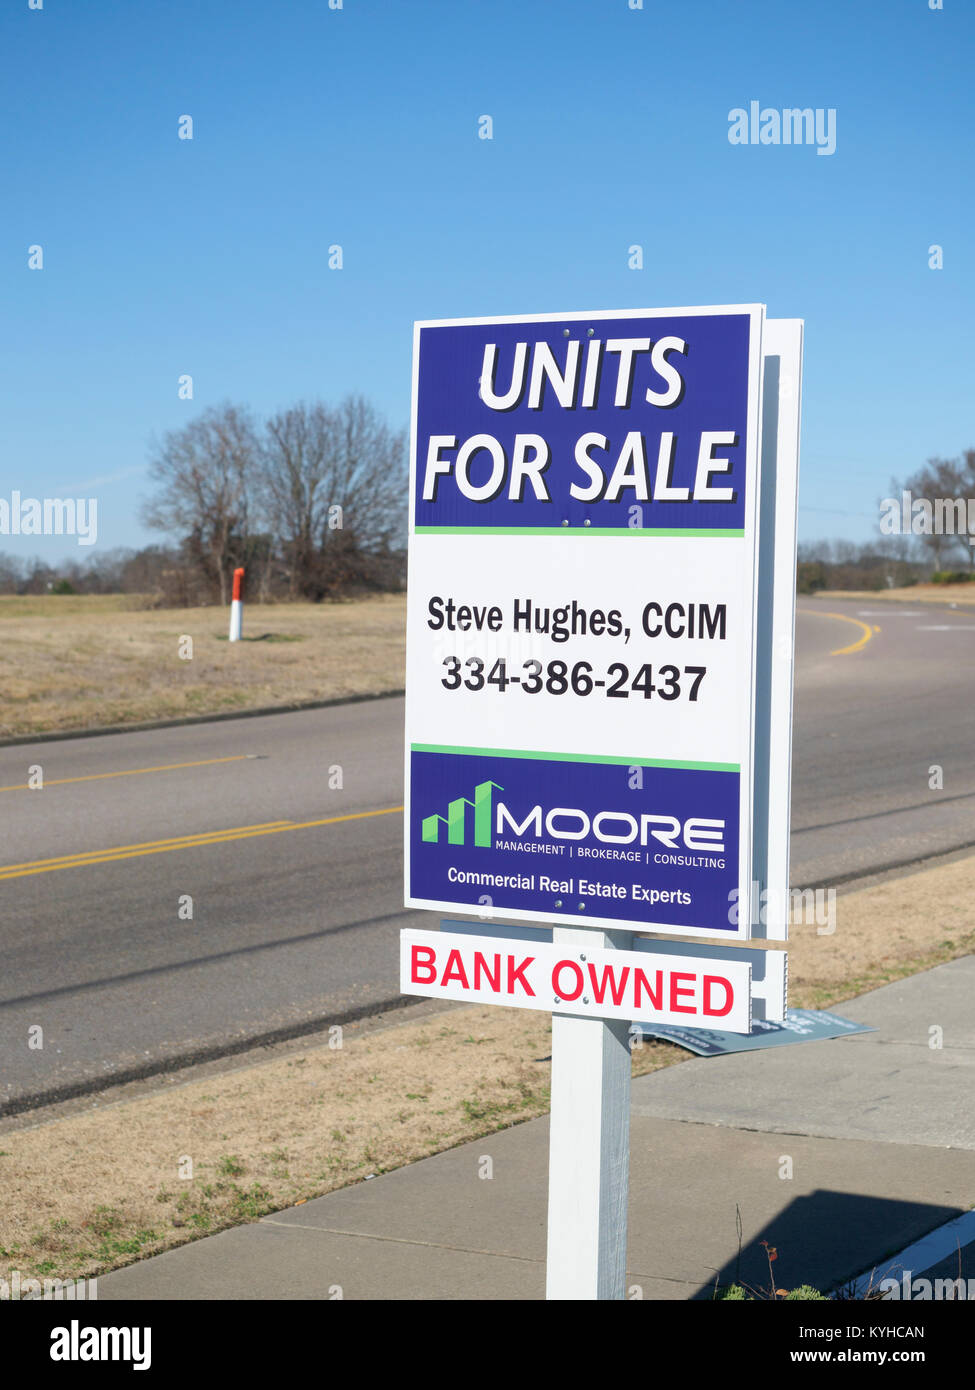 Bank Immobilien street sign, vereint für Verkauf, gerichtliche Verfallserklärung Eigenschaft in Montgomery Alabama, Vereinigte Staaten. Stockfoto